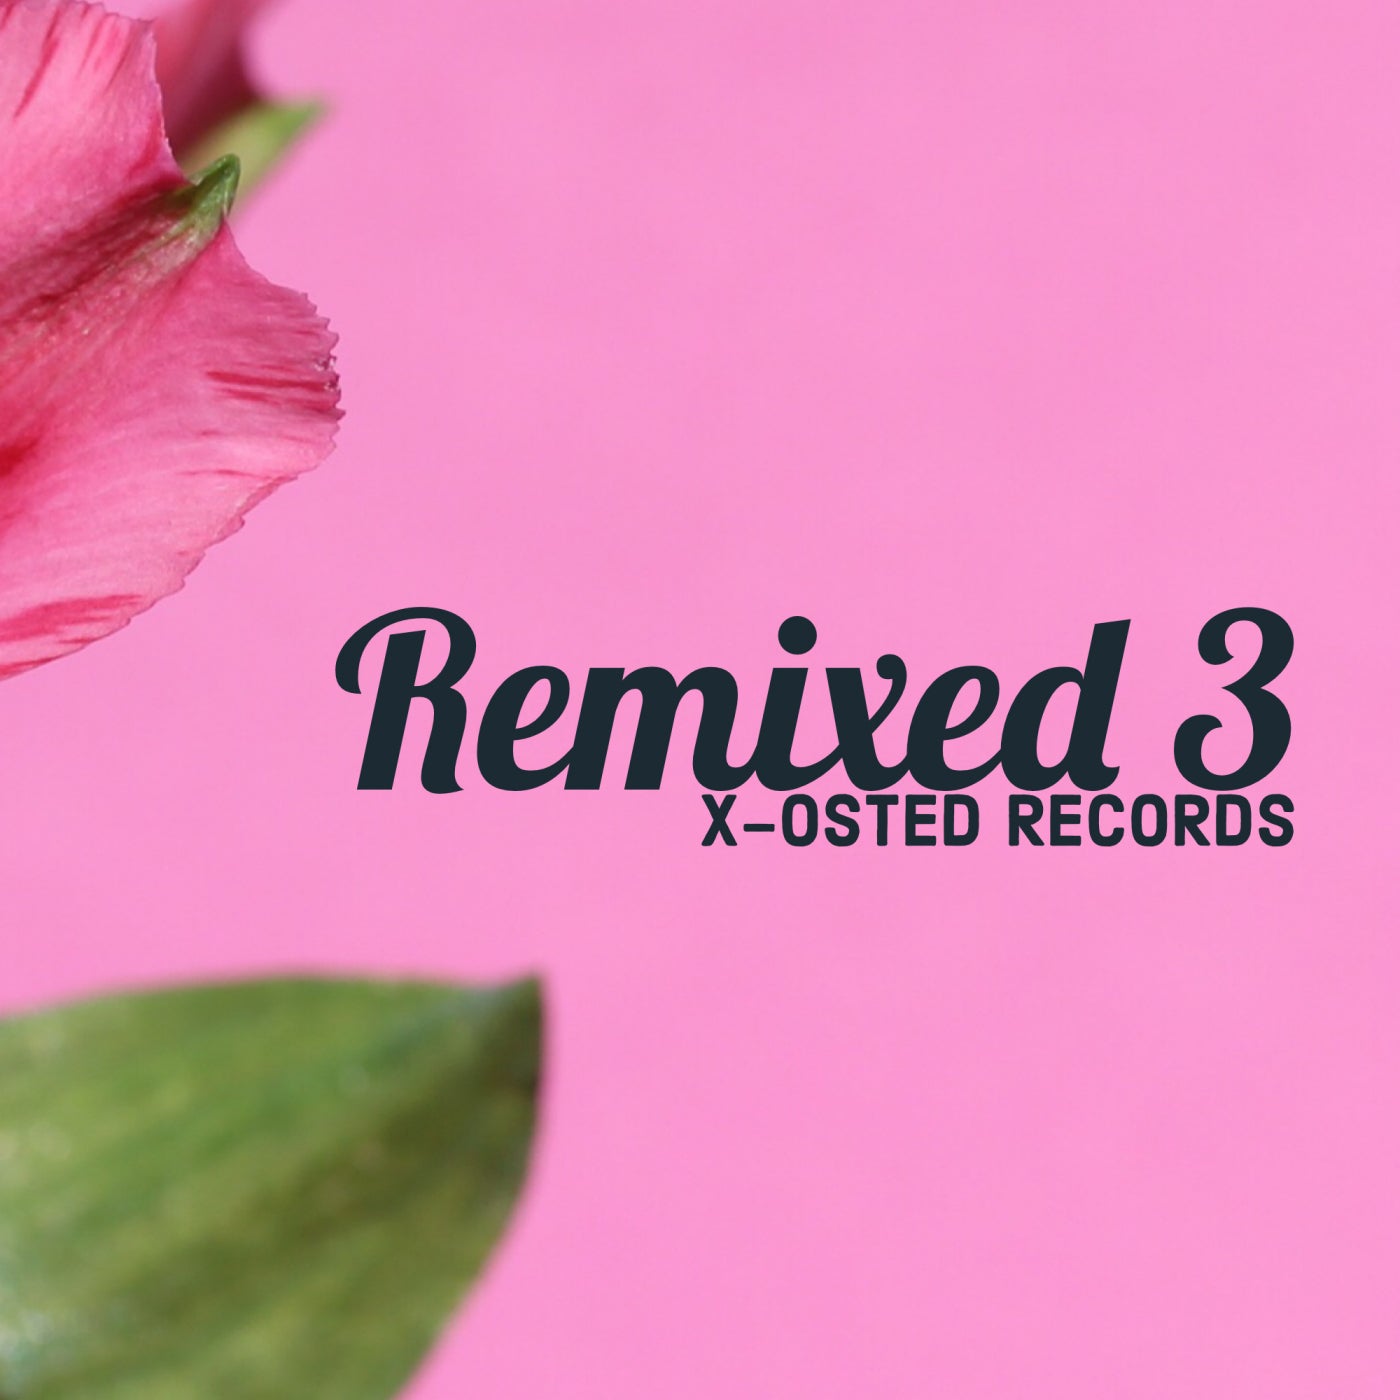 Remixed 3